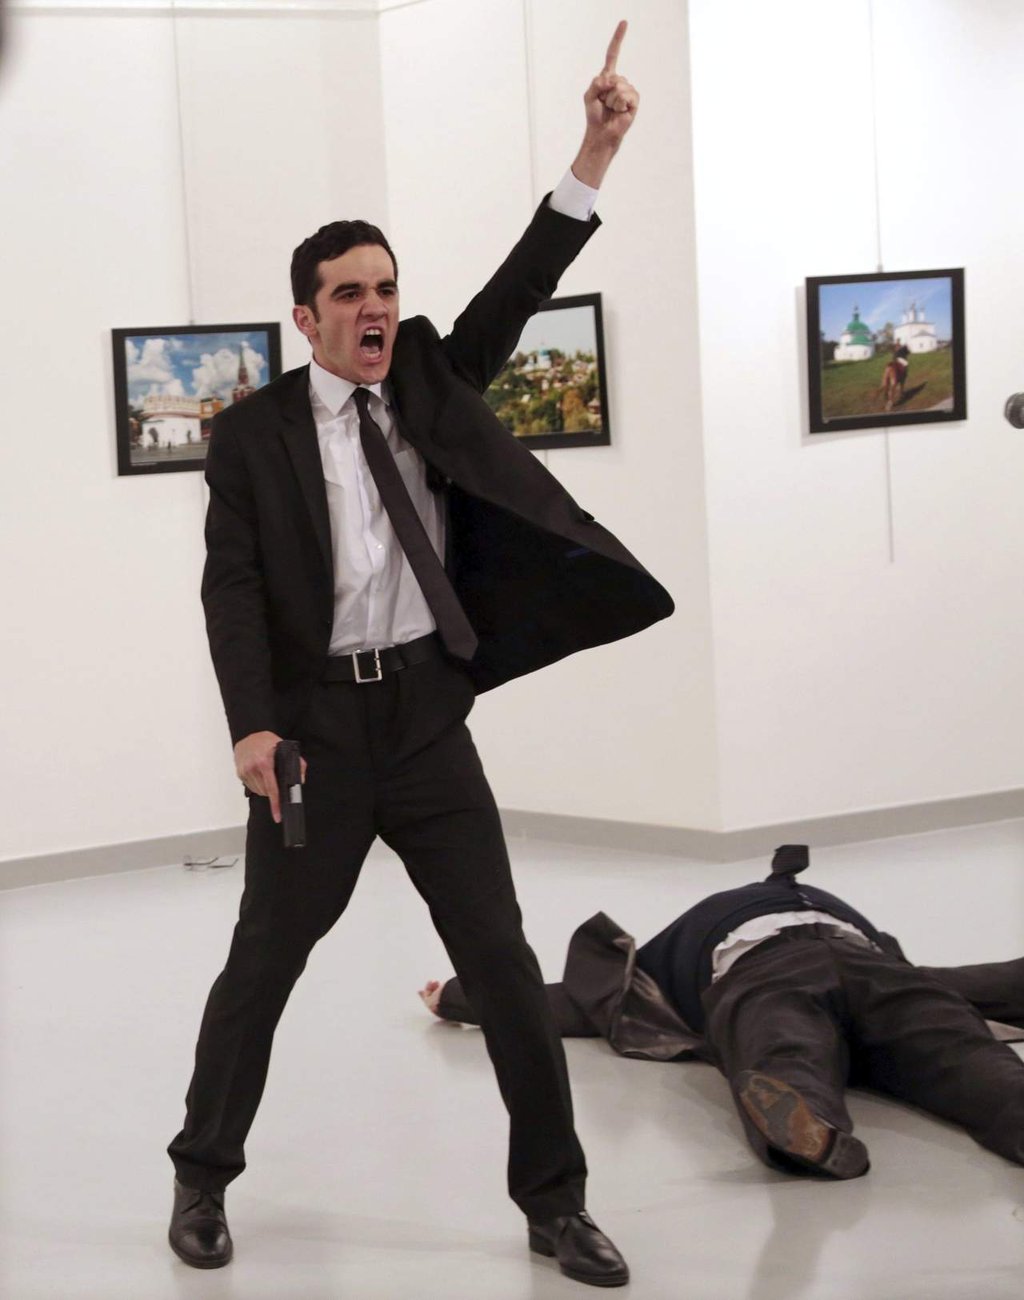 Imagen de asesinato de embajador gana el World Press Photo